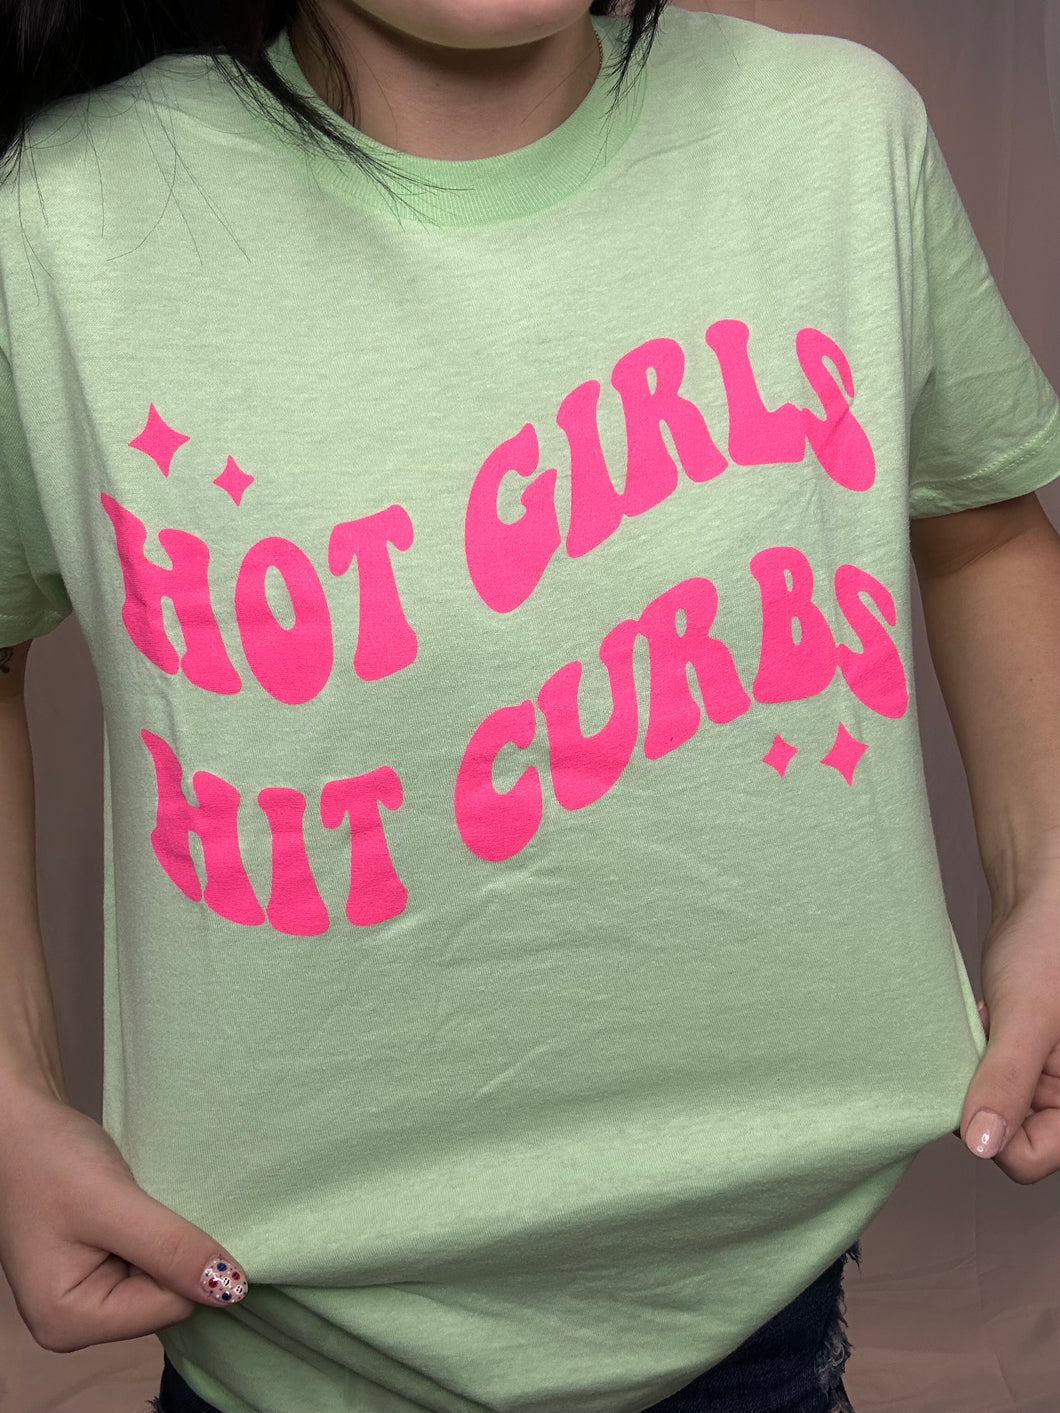 Hot Girls Hit Curbs T-shirt